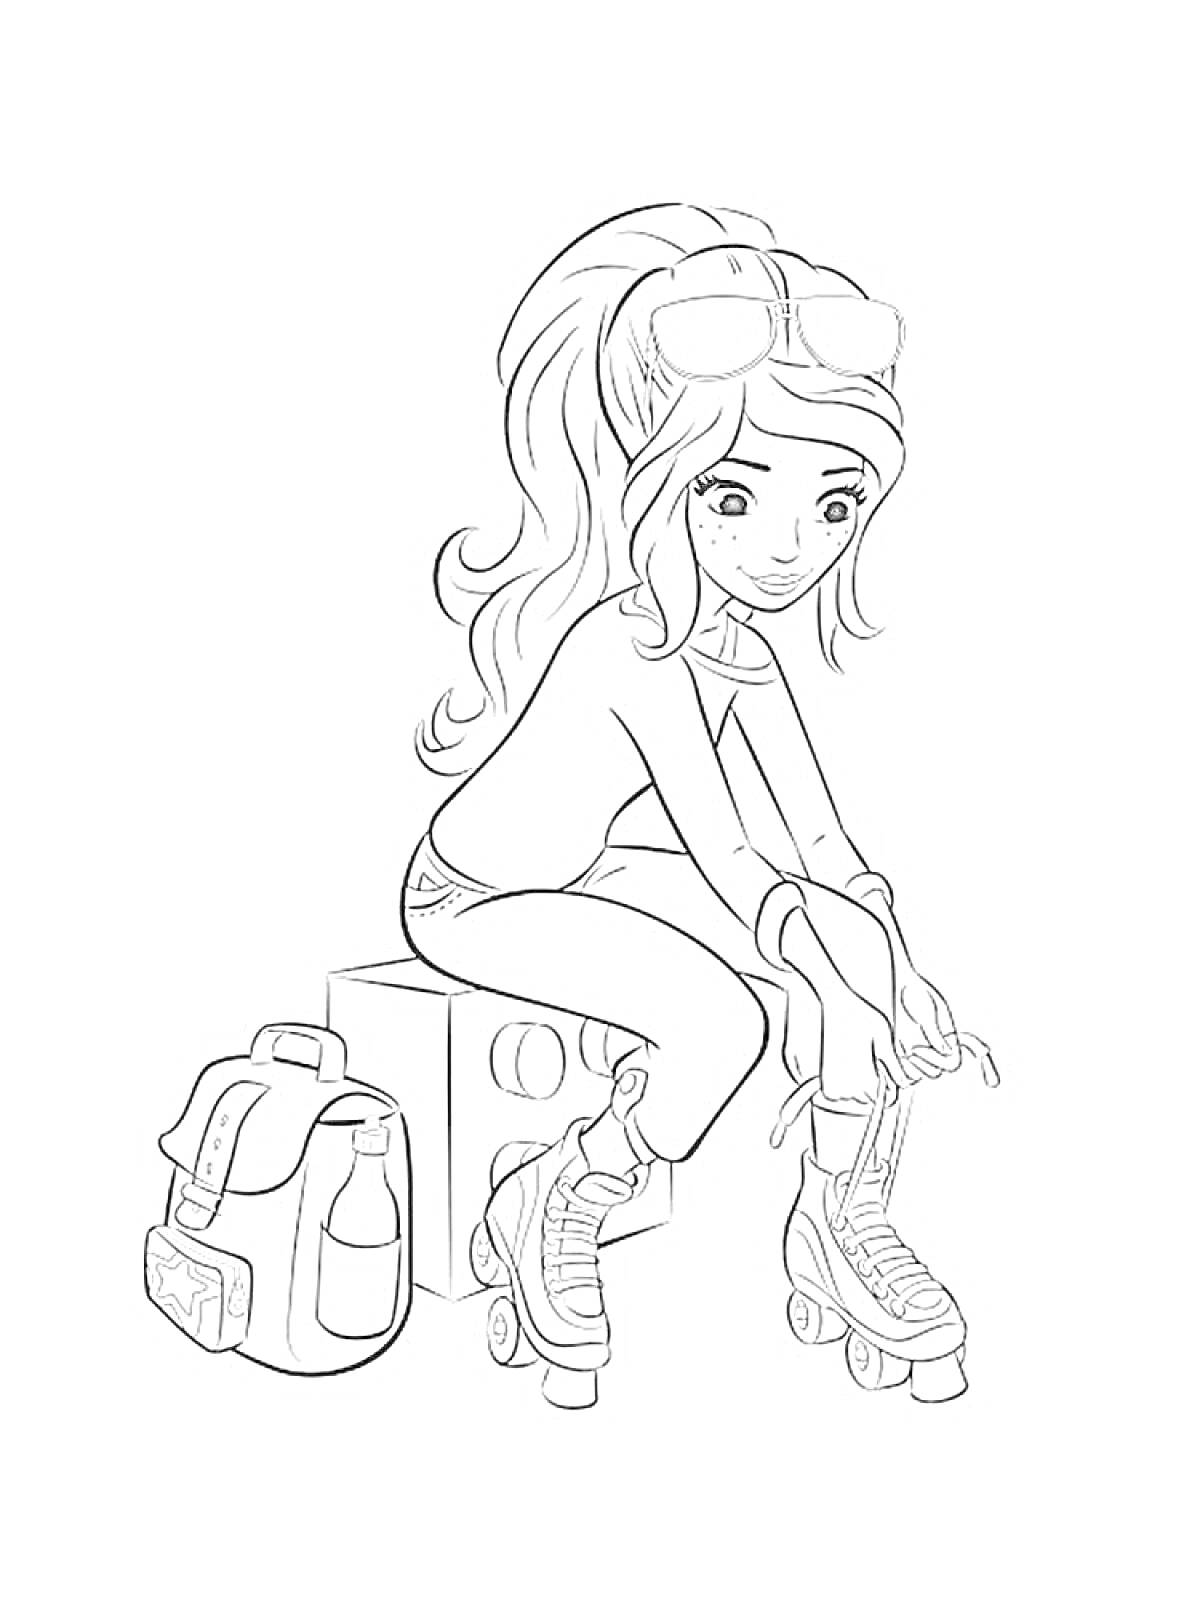 Девочка из Лего Френдс на роликовых коньках, рядом рюкзак и бутылка